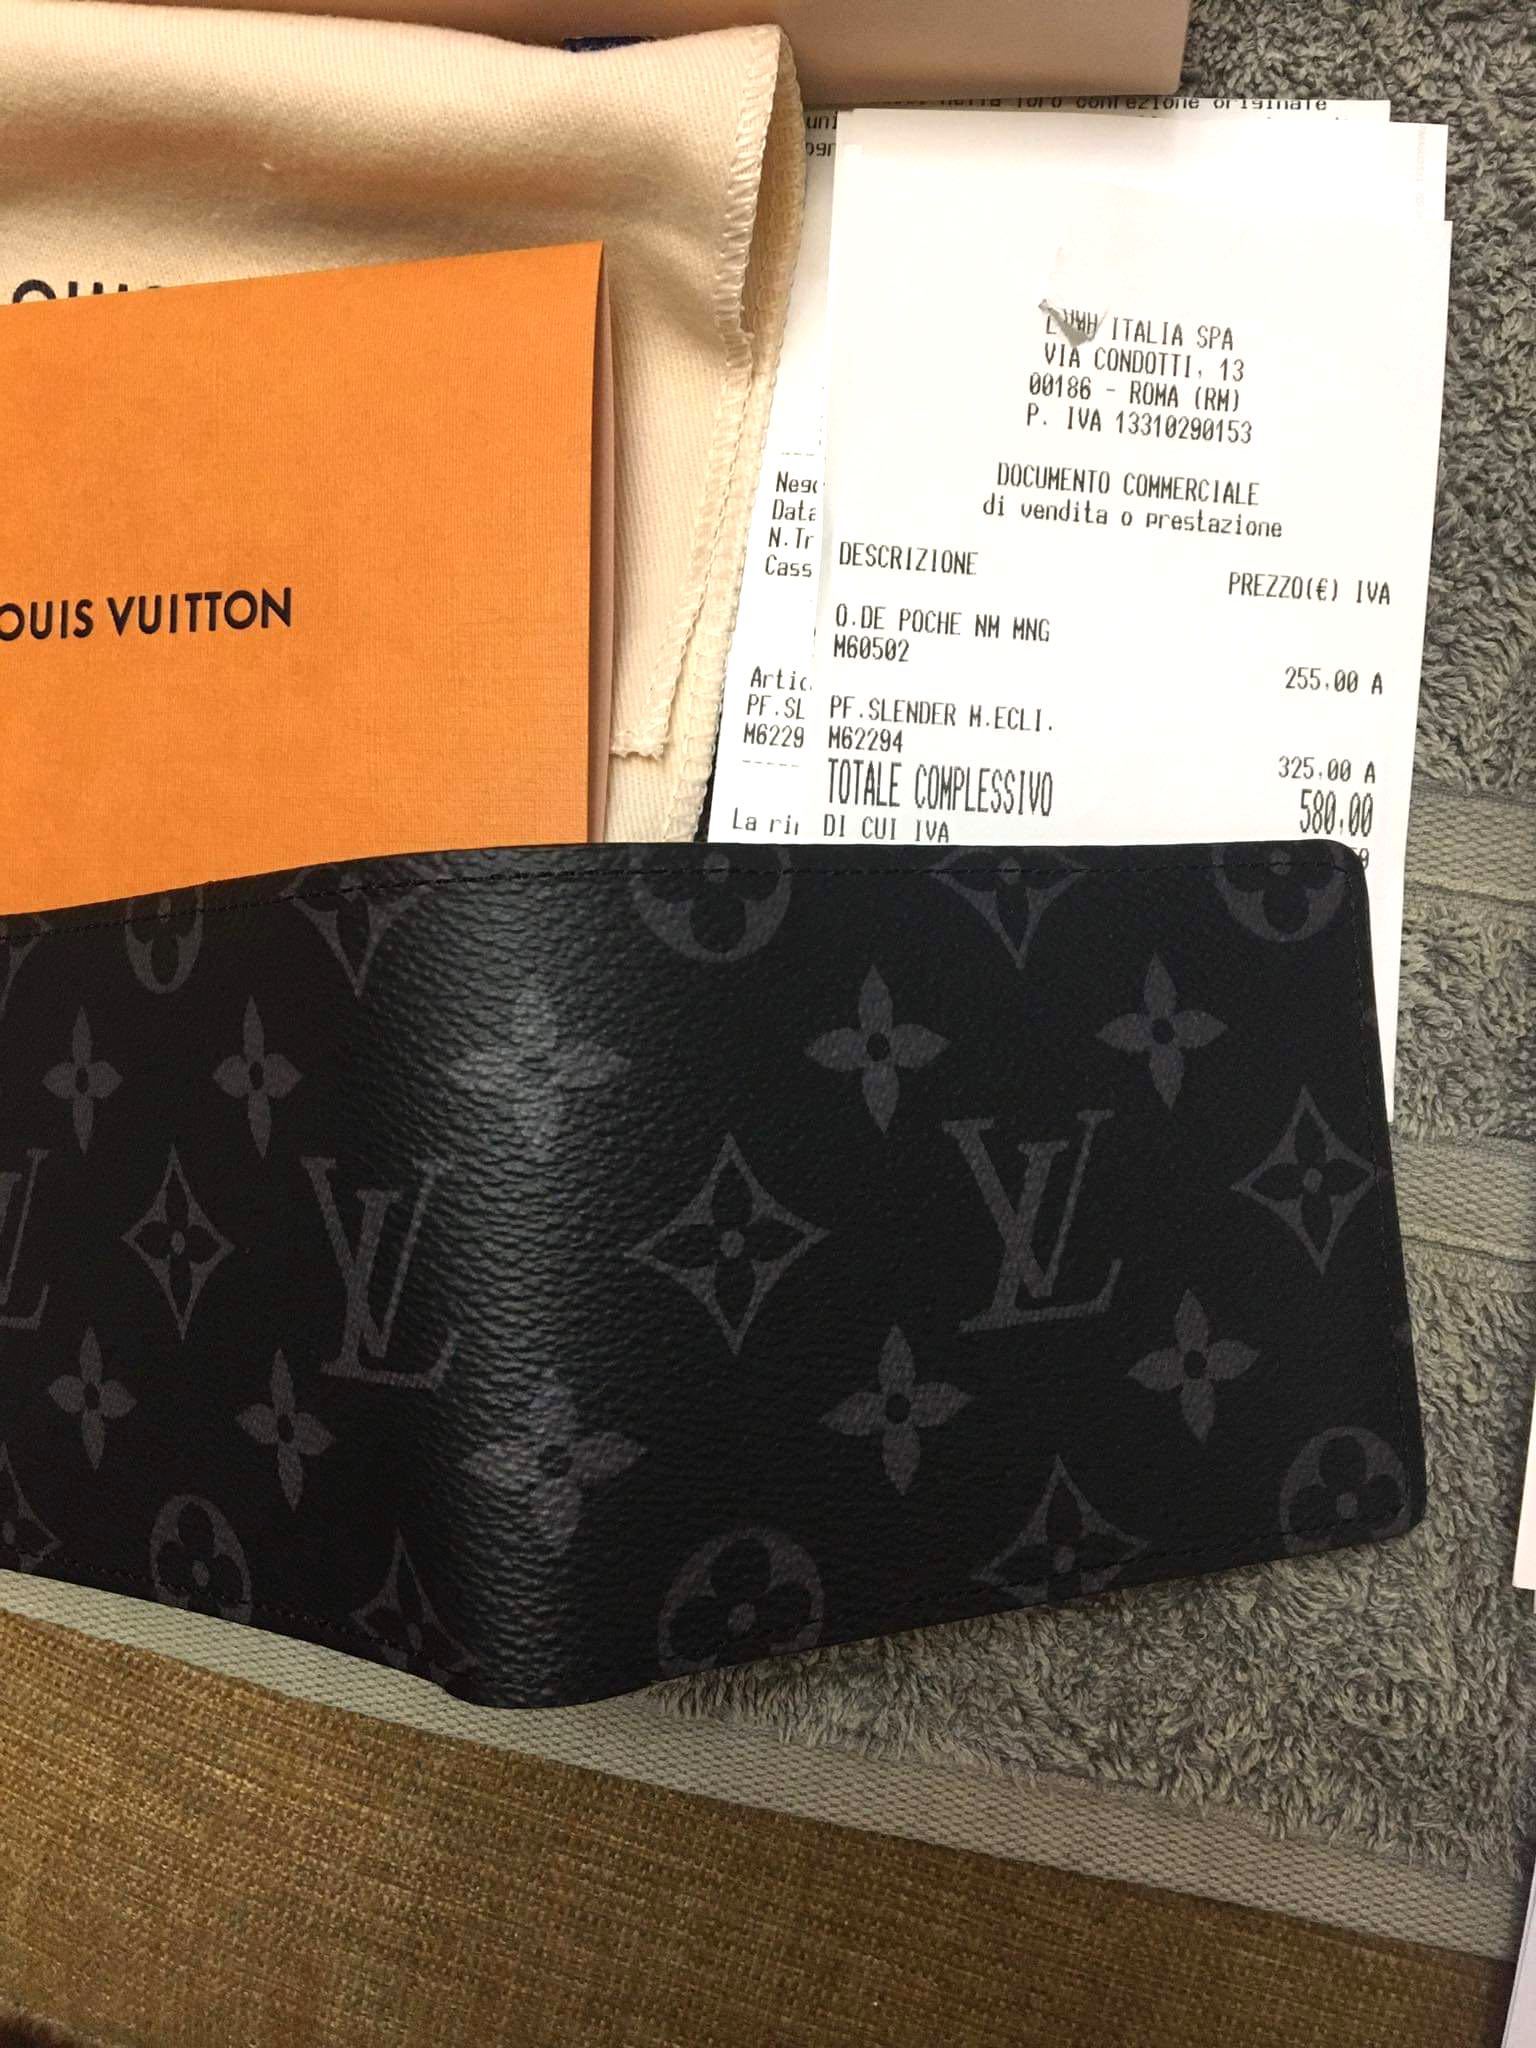 Foam Leather Black Louis Vuitton Mens Wallet